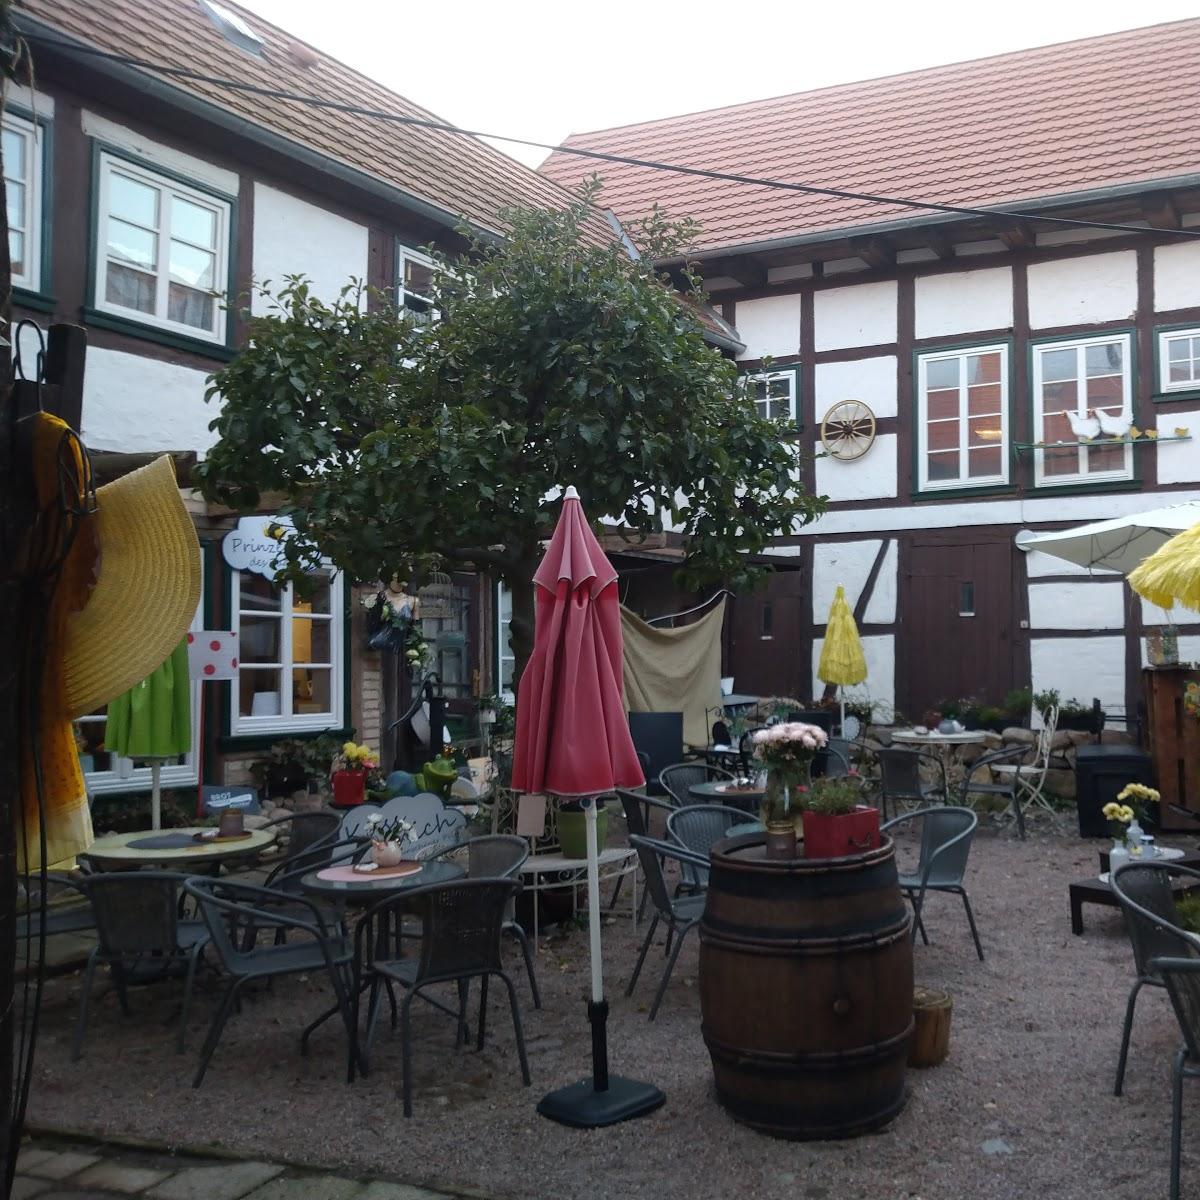 Restaurant "Hofcaffee" in Plau am See